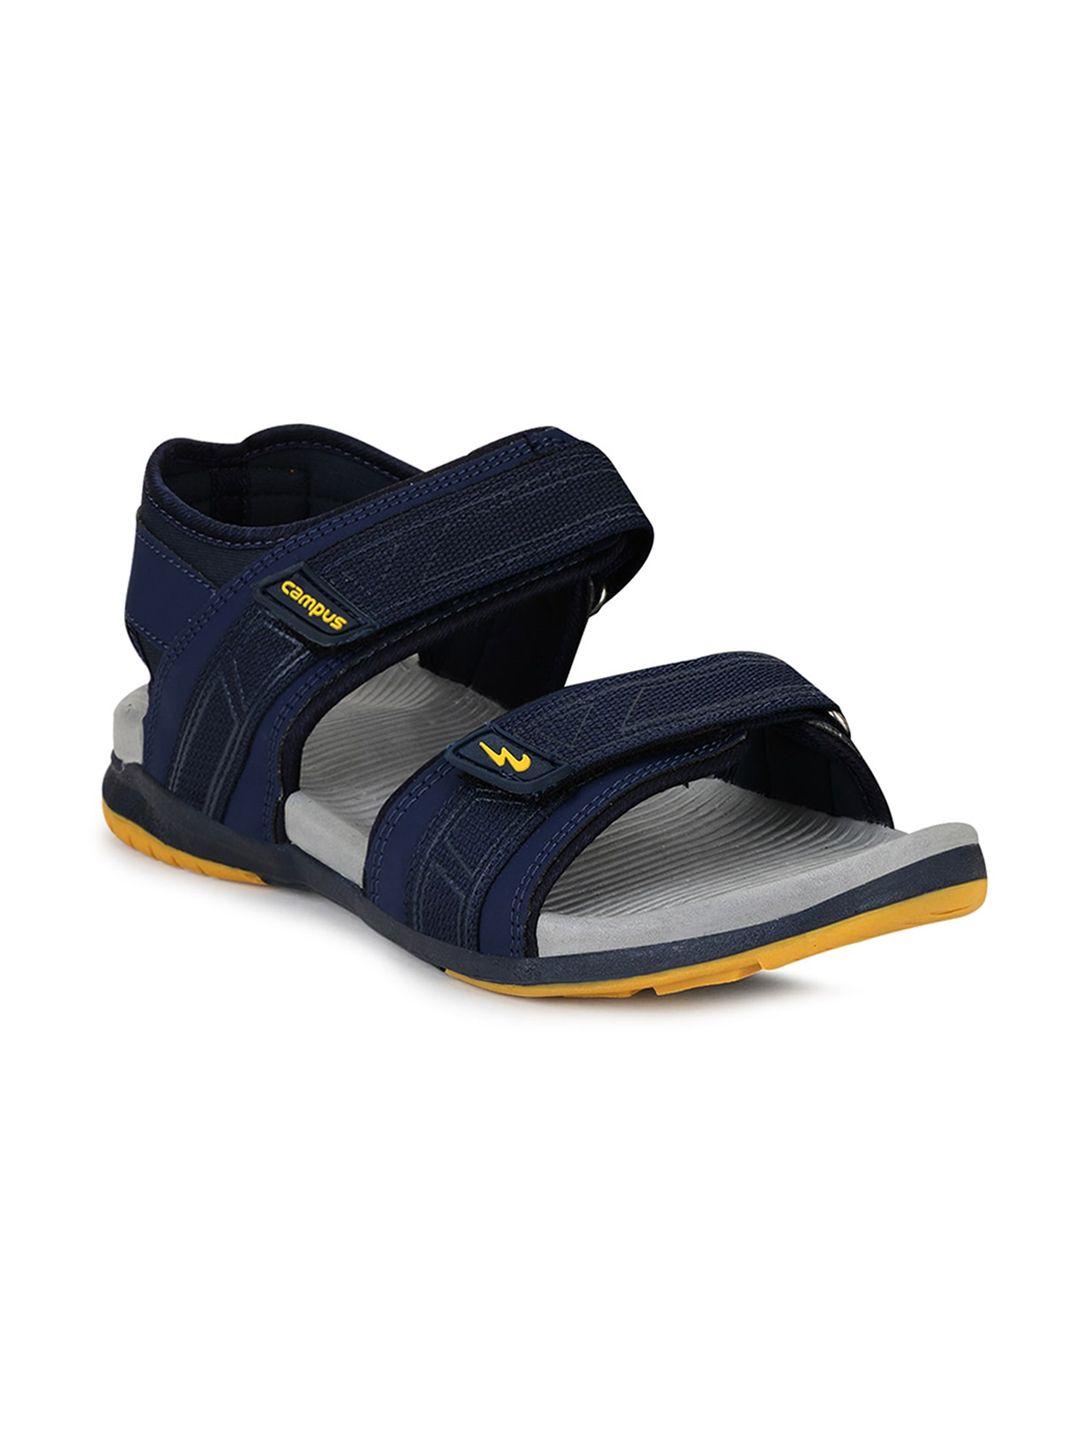 campus-men-navy-blue-sports-sandals